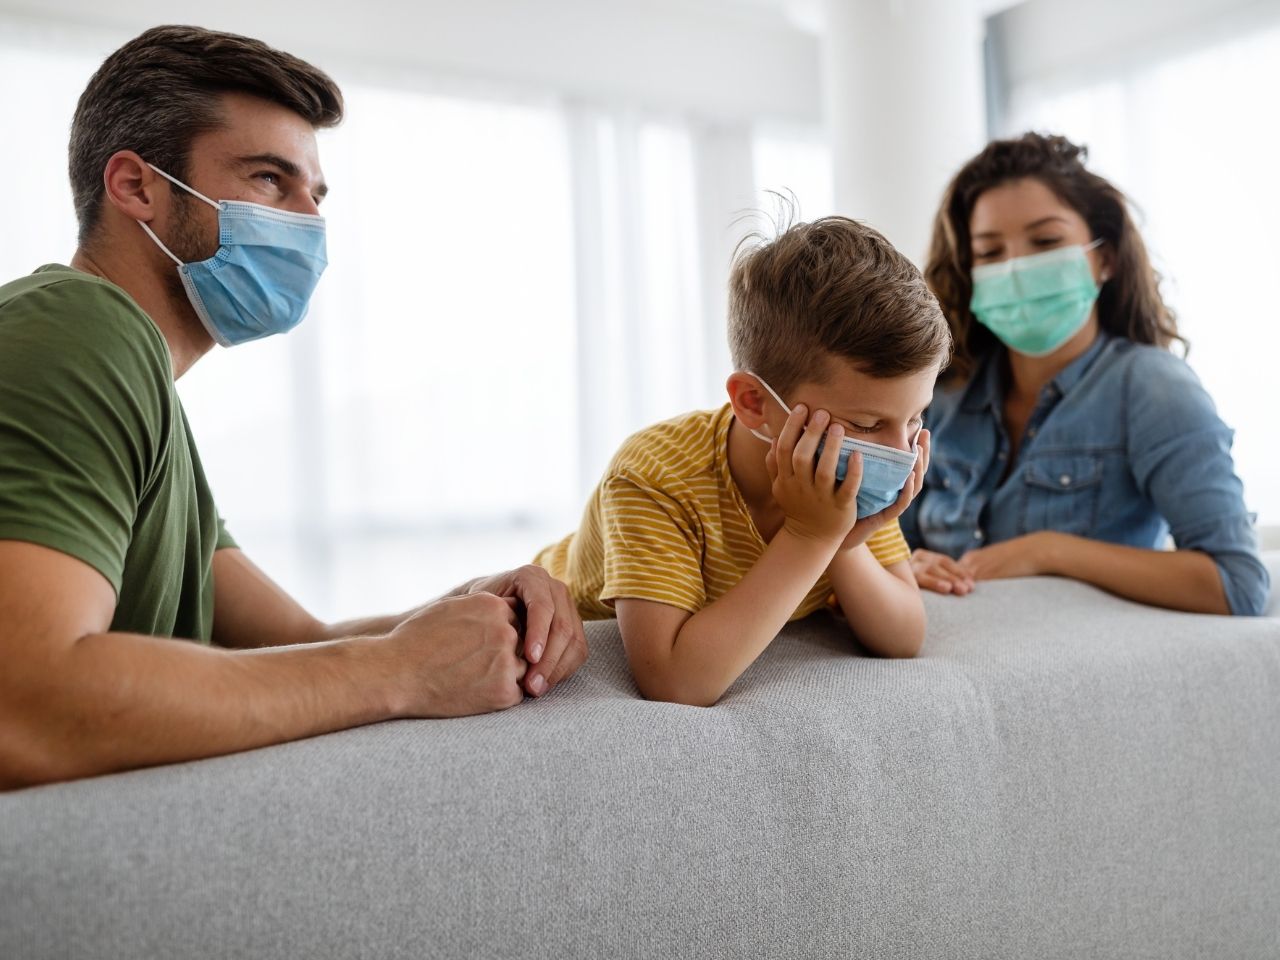 Odnos dece I roditelja u vreme COVID-19 pandemije